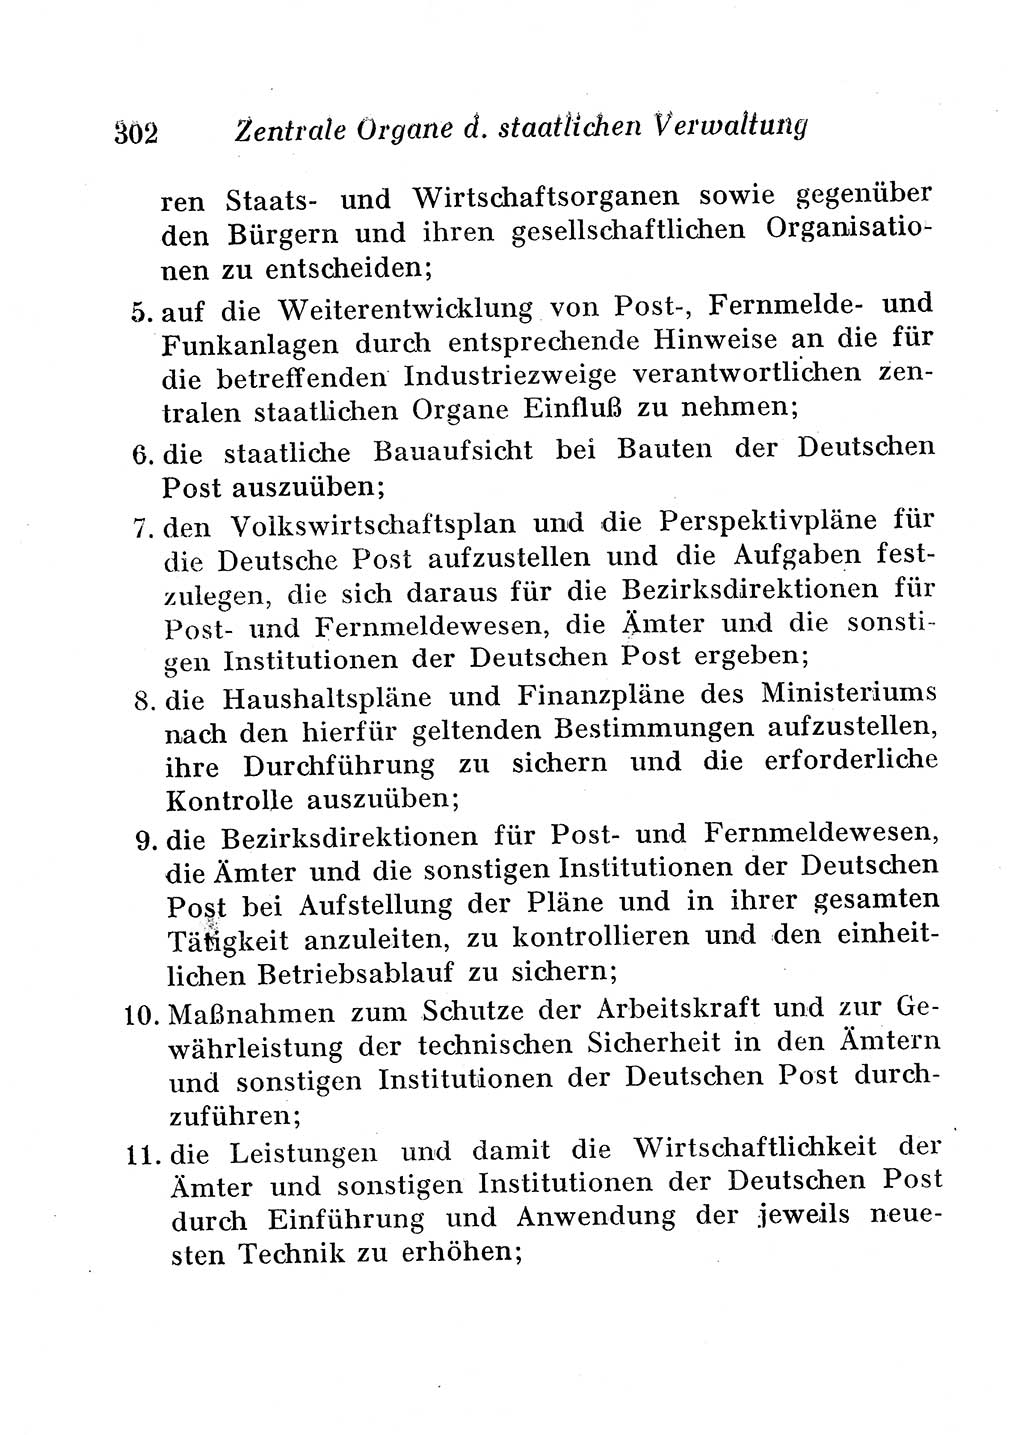 Staats- und verwaltungsrechtliche Gesetze der Deutschen Demokratischen Republik (DDR) 1958, Seite 302 (StVerwR Ges. DDR 1958, S. 302)